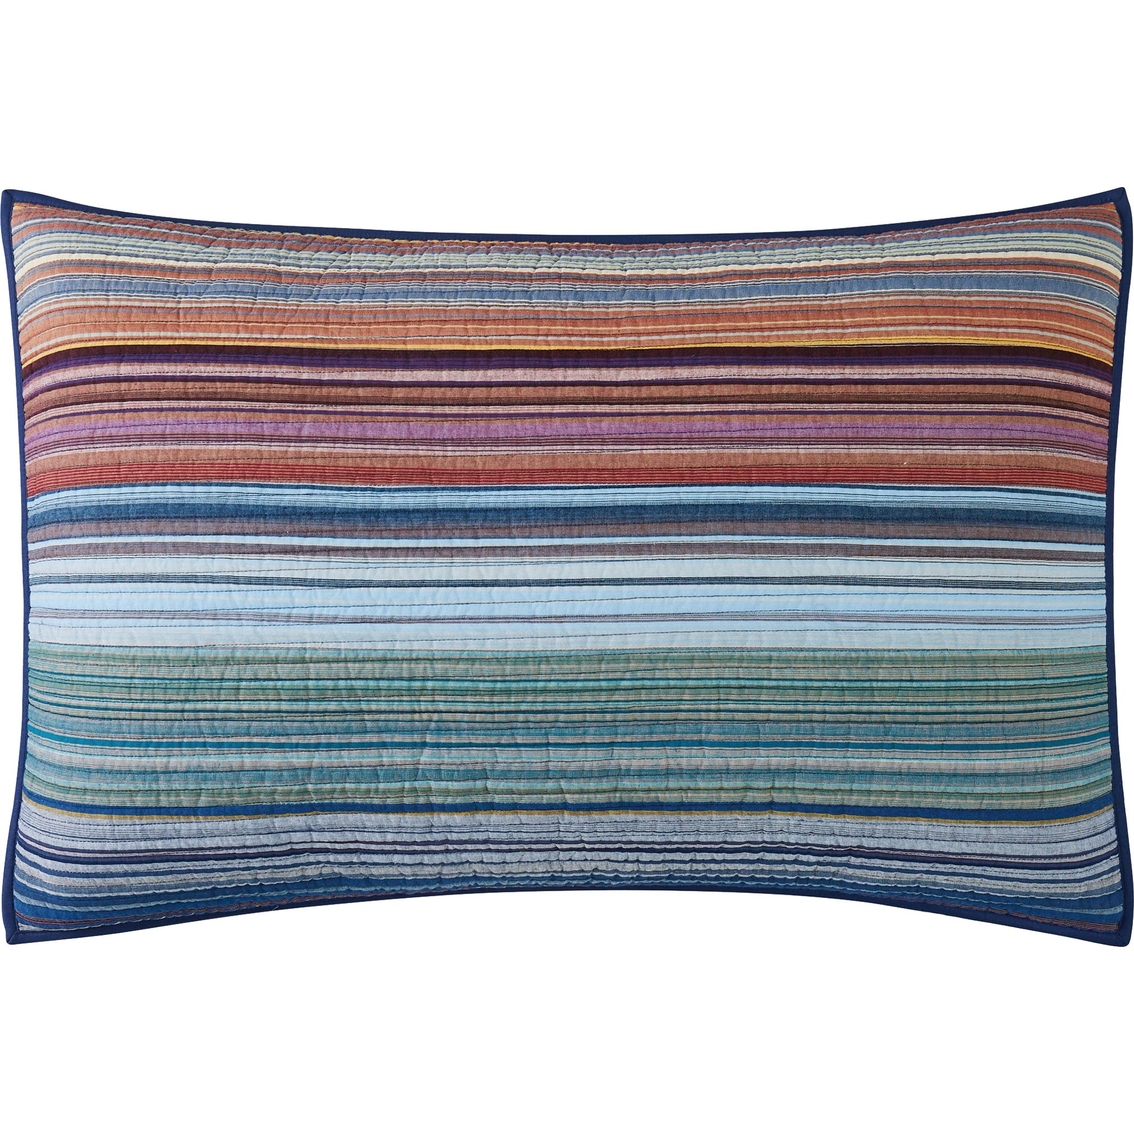 Brooklyn Loom Met Stripe Yarn Dye Quilt Set - Image 6 of 7